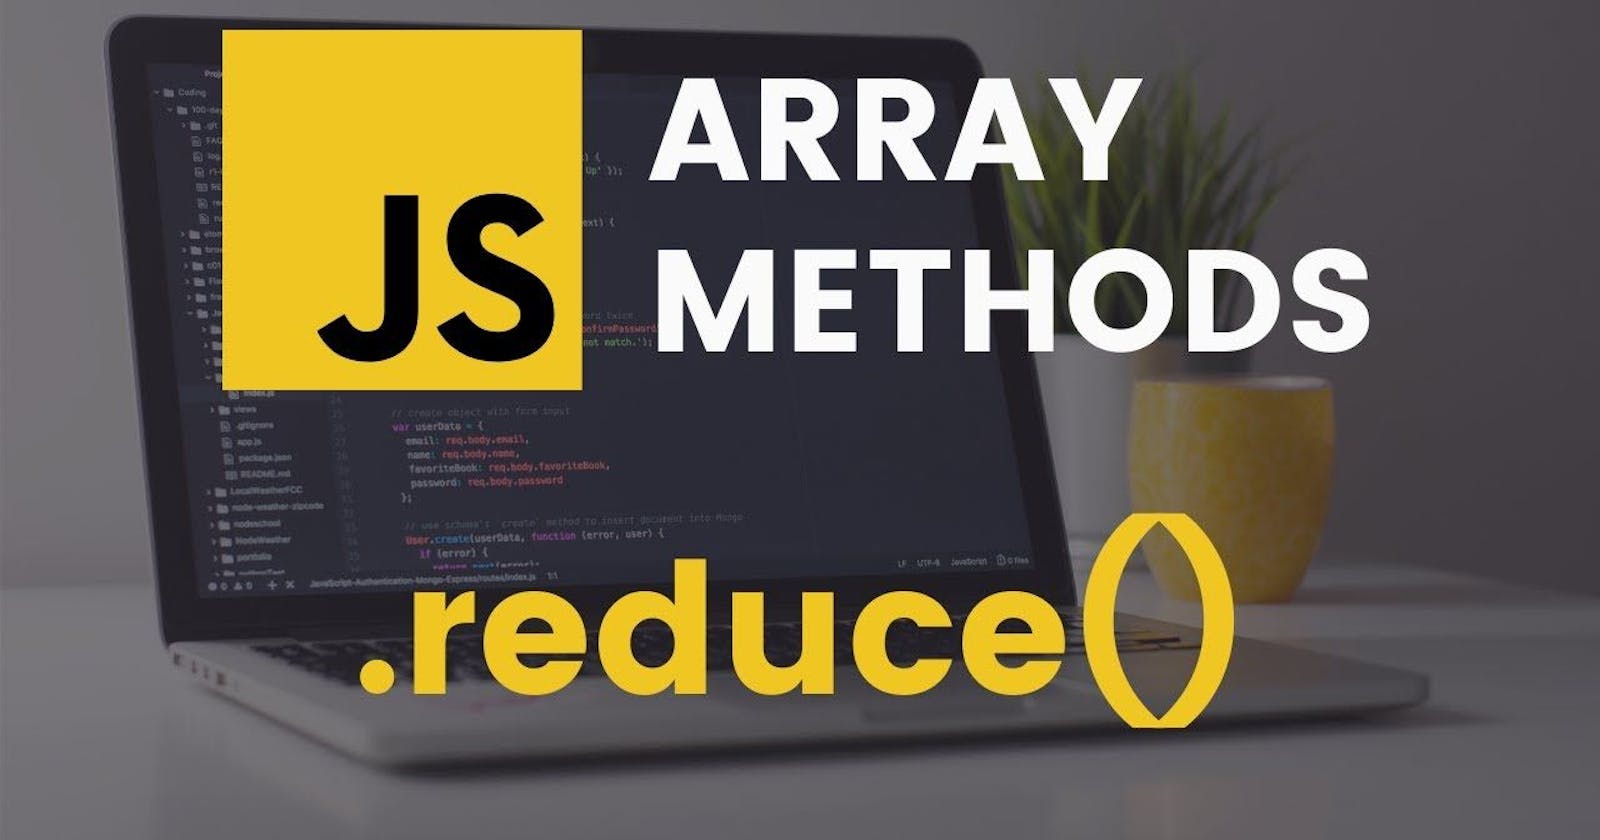 .reduce() method in JavaScript